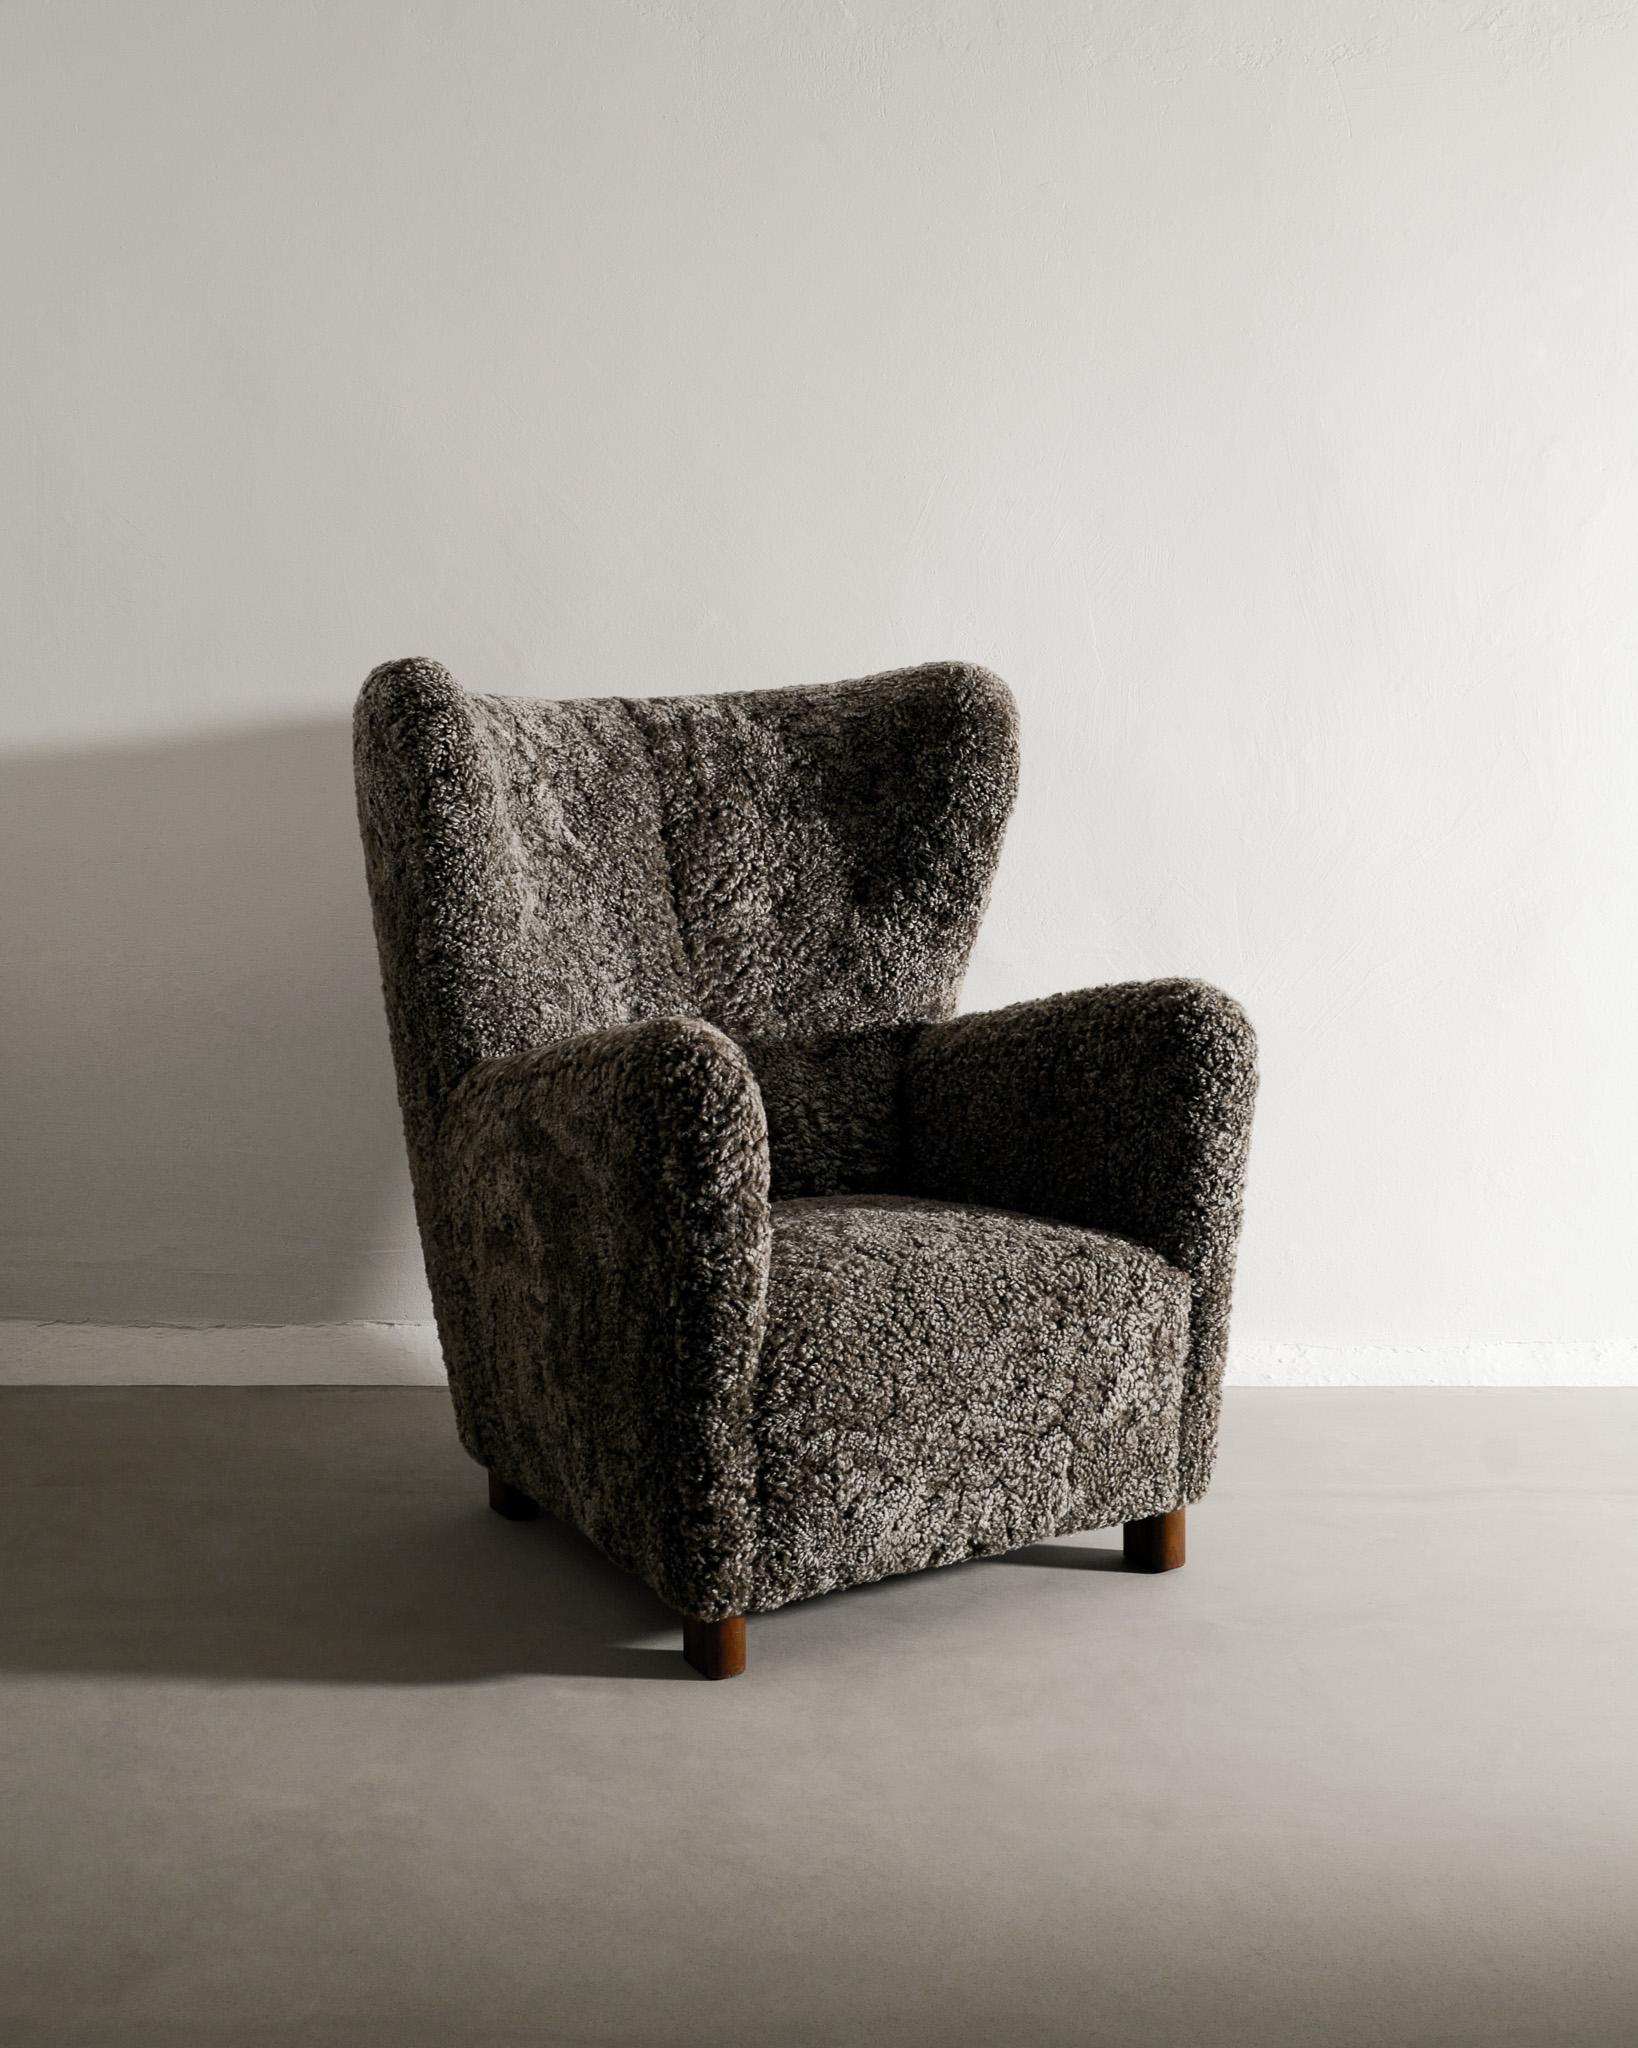 Rare fauteuil à dossier haut danois du milieu du siècle produit par Thorald Madsen Snedkeri au Danemark dans les années 1940. En très bon état et entièrement restauré et tapissé en peau de mouton couleur moka foncé par nos soins. La lampe sur la